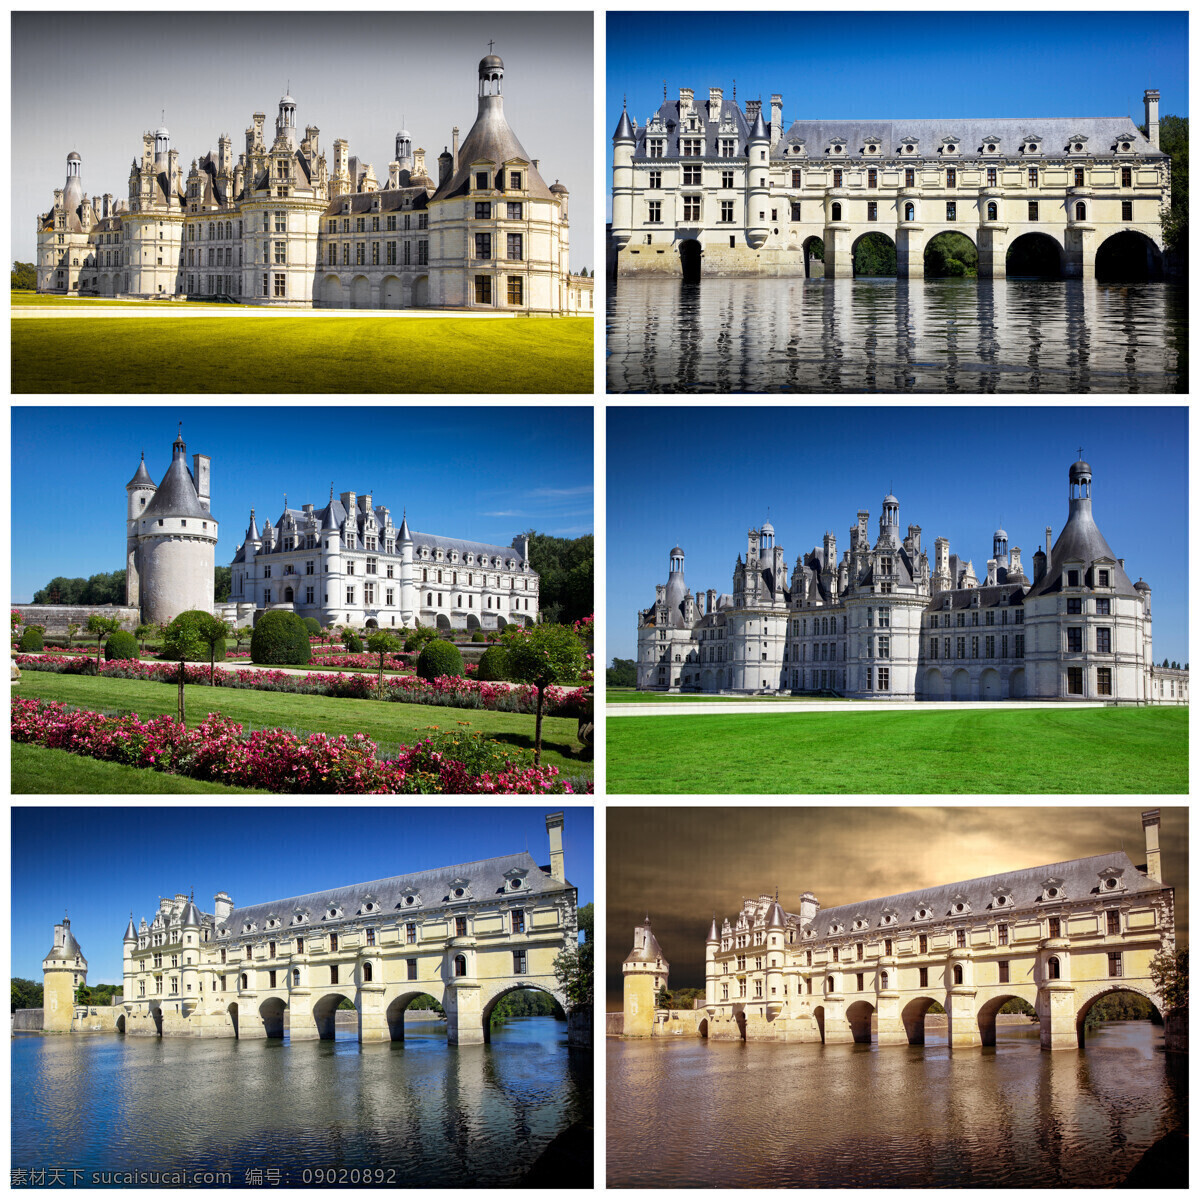 美丽 城堡 风景 城堡风景 古堡风景 庄园风景 欧洲风景 旅游景点 城堡图片 风景图片